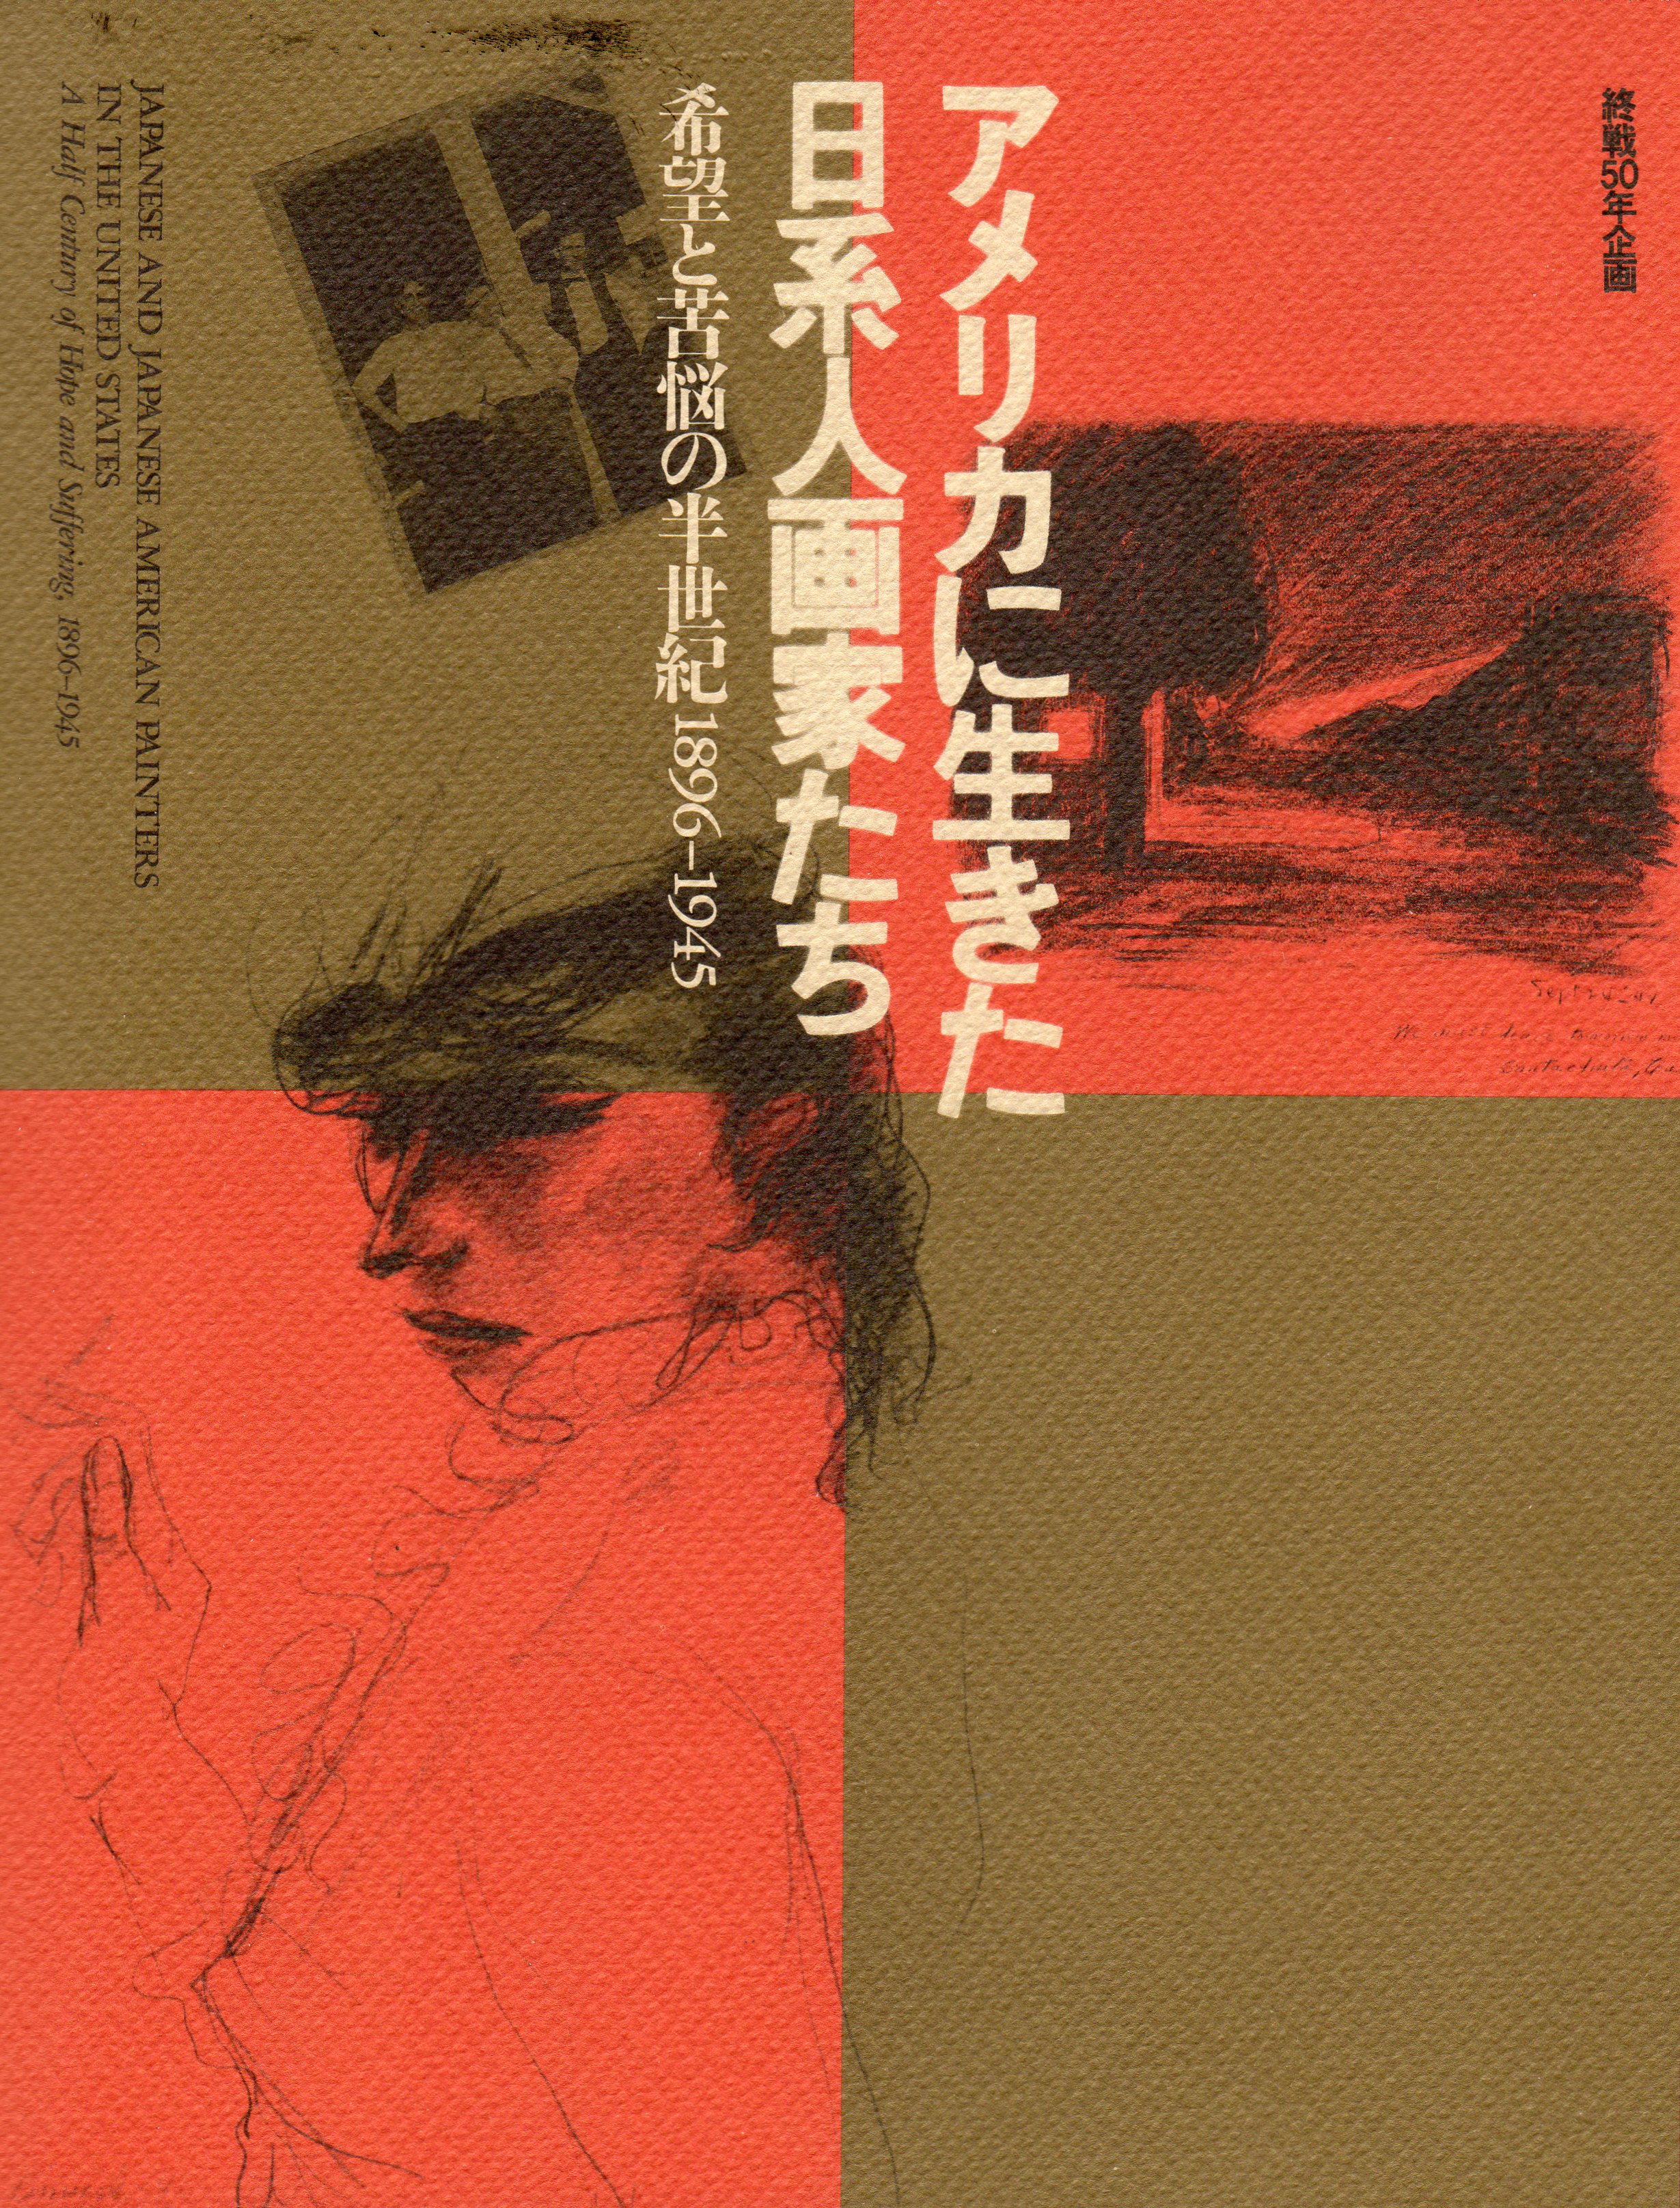 アメリカに生きた日系人画家たち: 希望と苦悩の半世紀1896-1945 ブックカバー